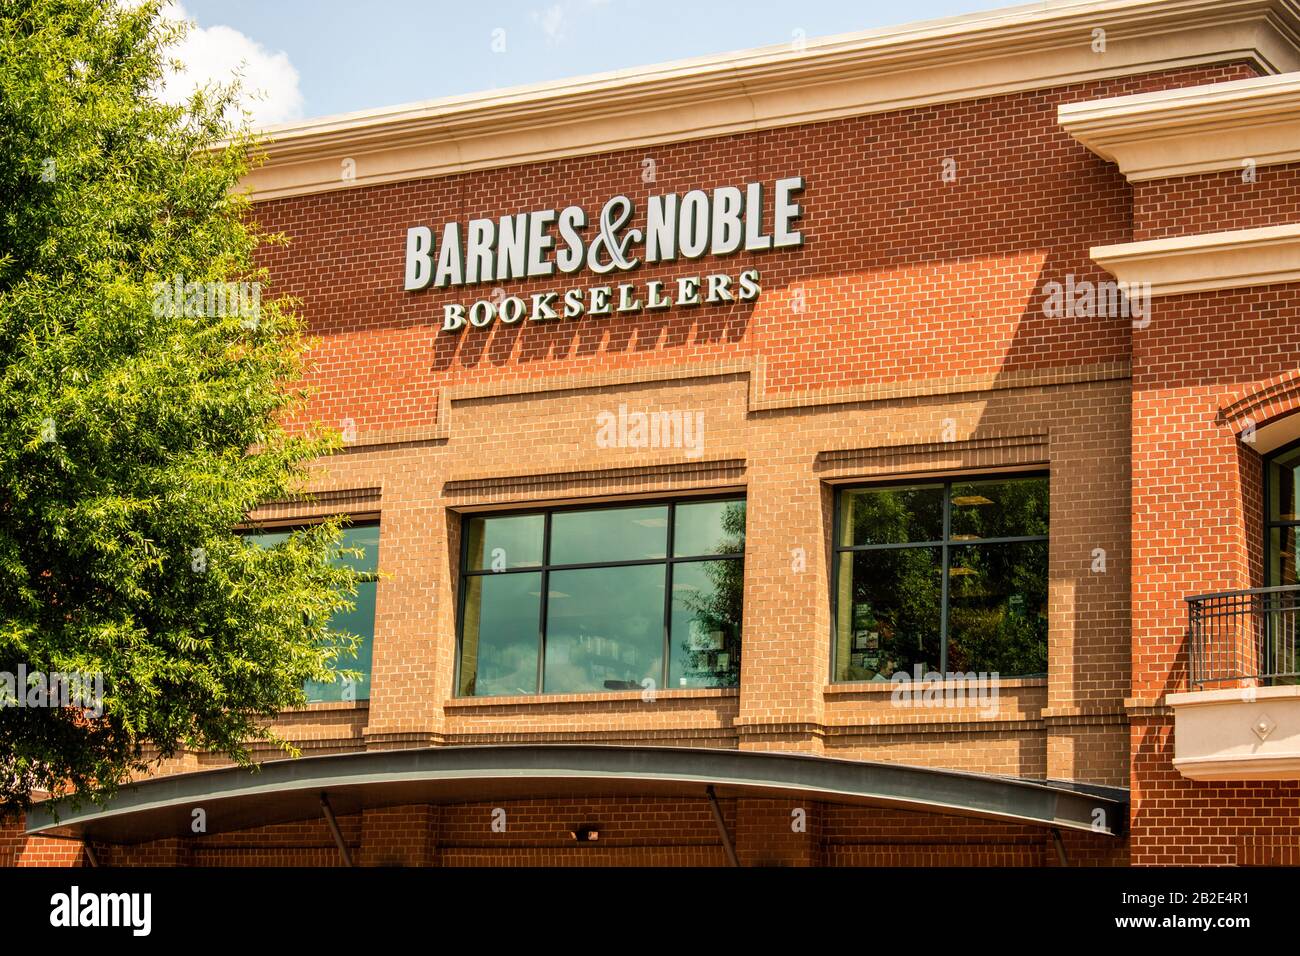 Charlotte, Caroline du Nord, États-Unis - 7 juillet 2019 : photo horizontale moyenne de la marque de façade extérieure « Barnes & Noble Booksellers » et de l'affichage du logo par temps ensoleillé. Banque D'Images